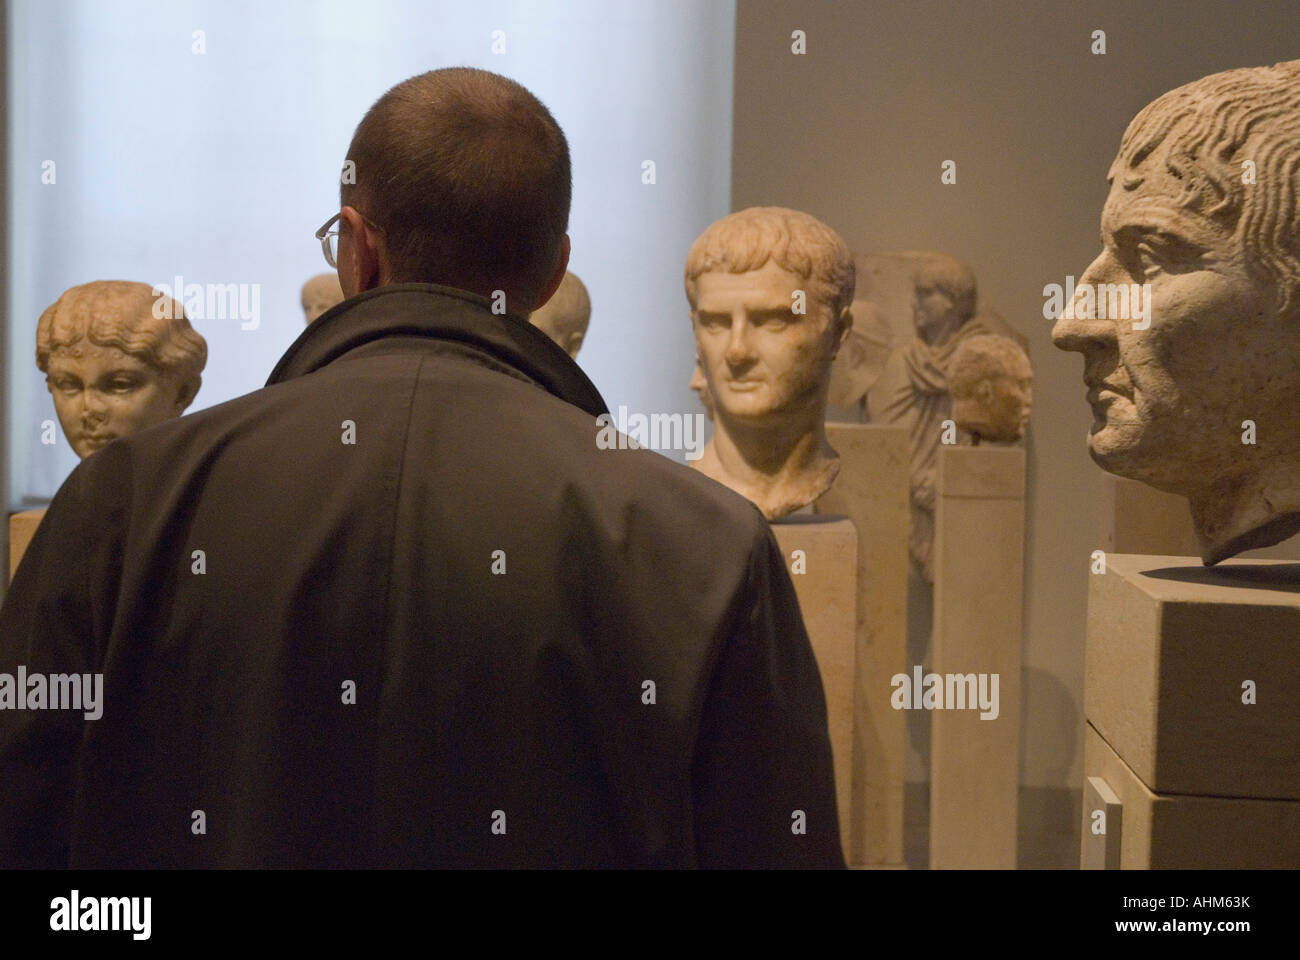 turista en el museo pergamo y bustos romanos,berlin,alemania,germany Stock Photo